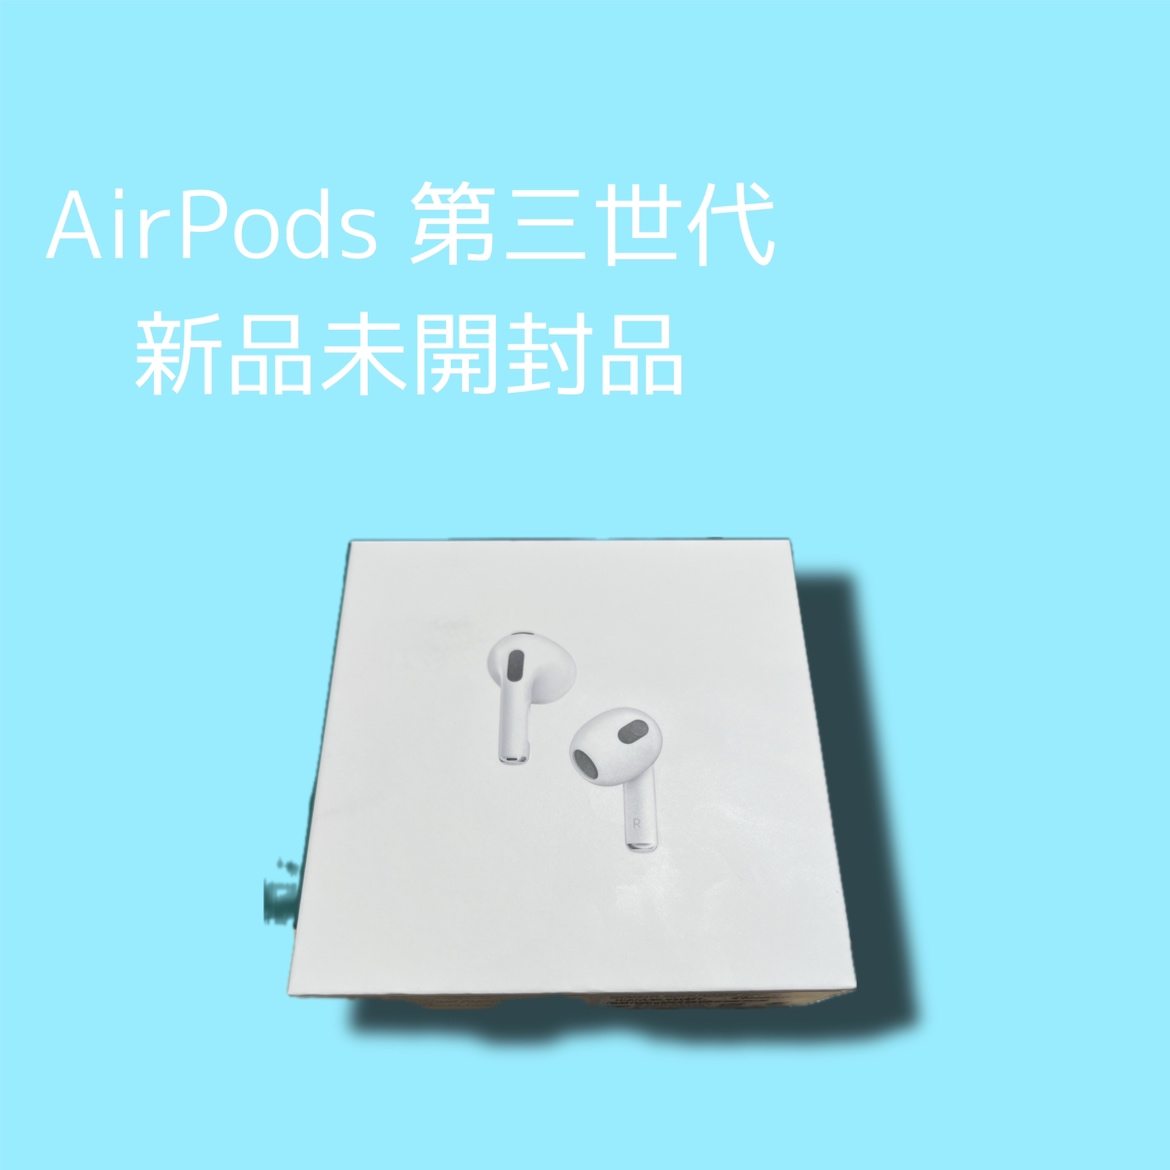 AirPods 第三世代・新品未開封品【天神地下街店】